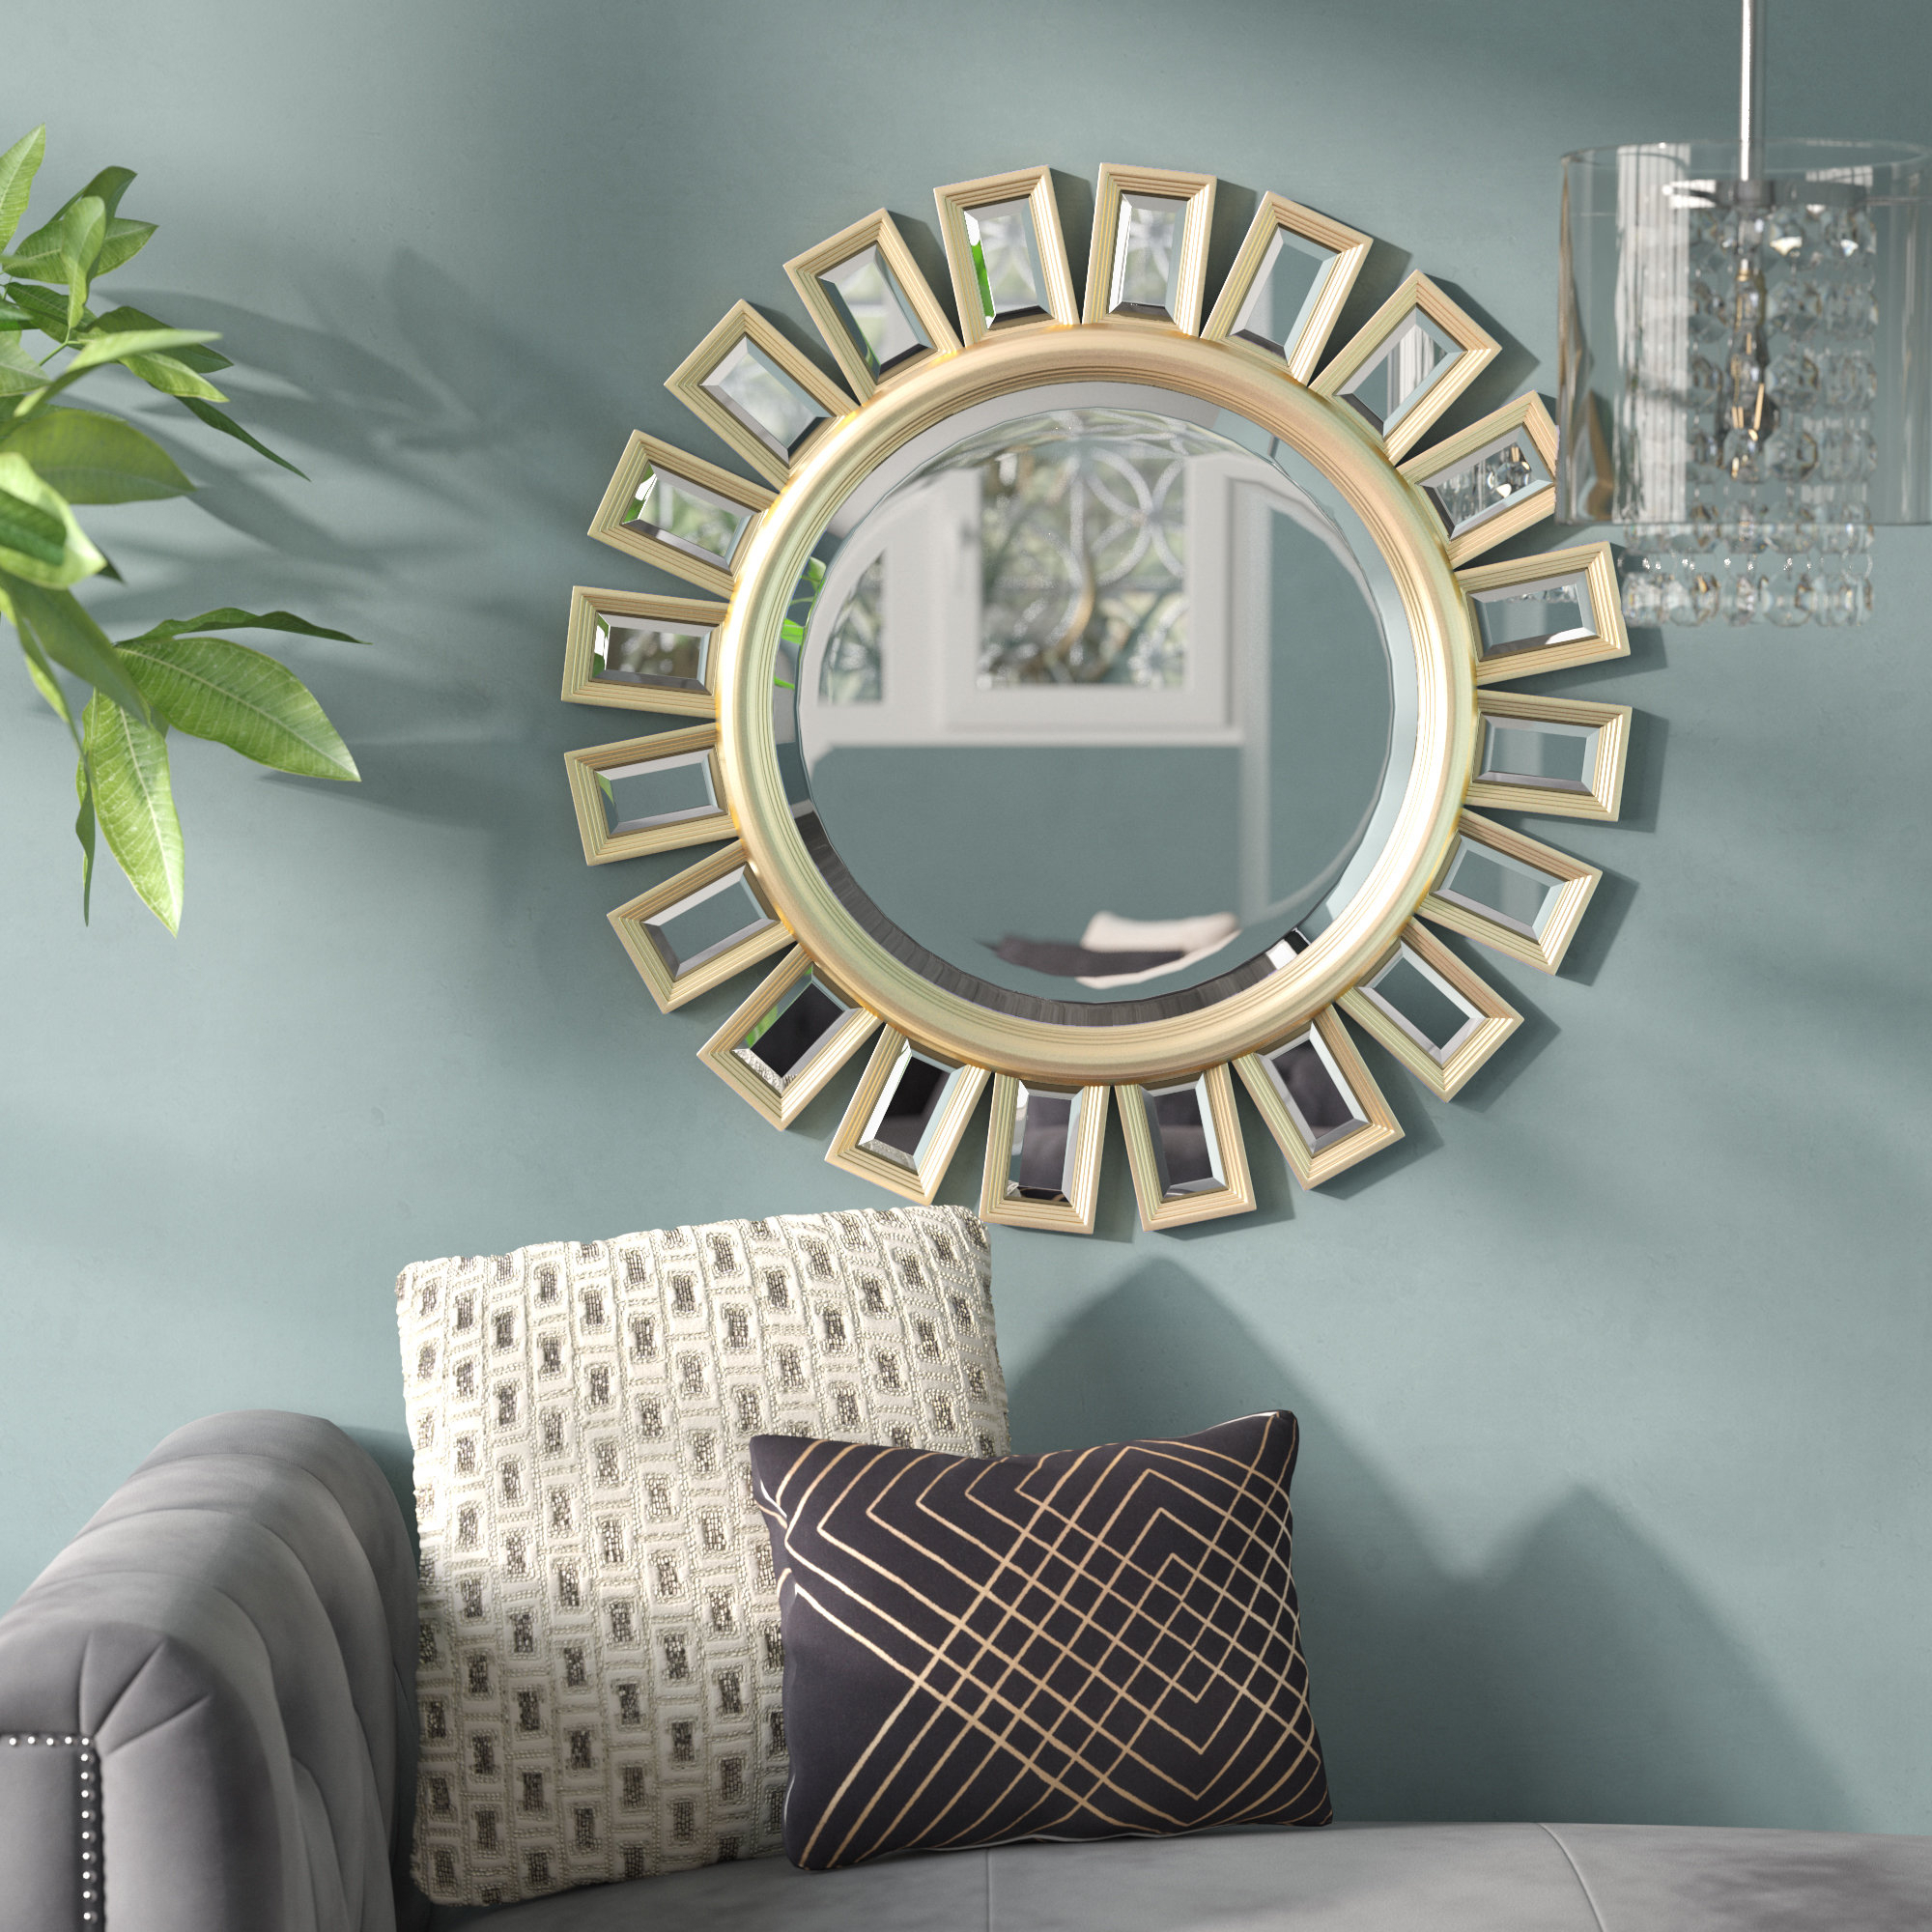 Large Living Room Mirrors - VisualHunt